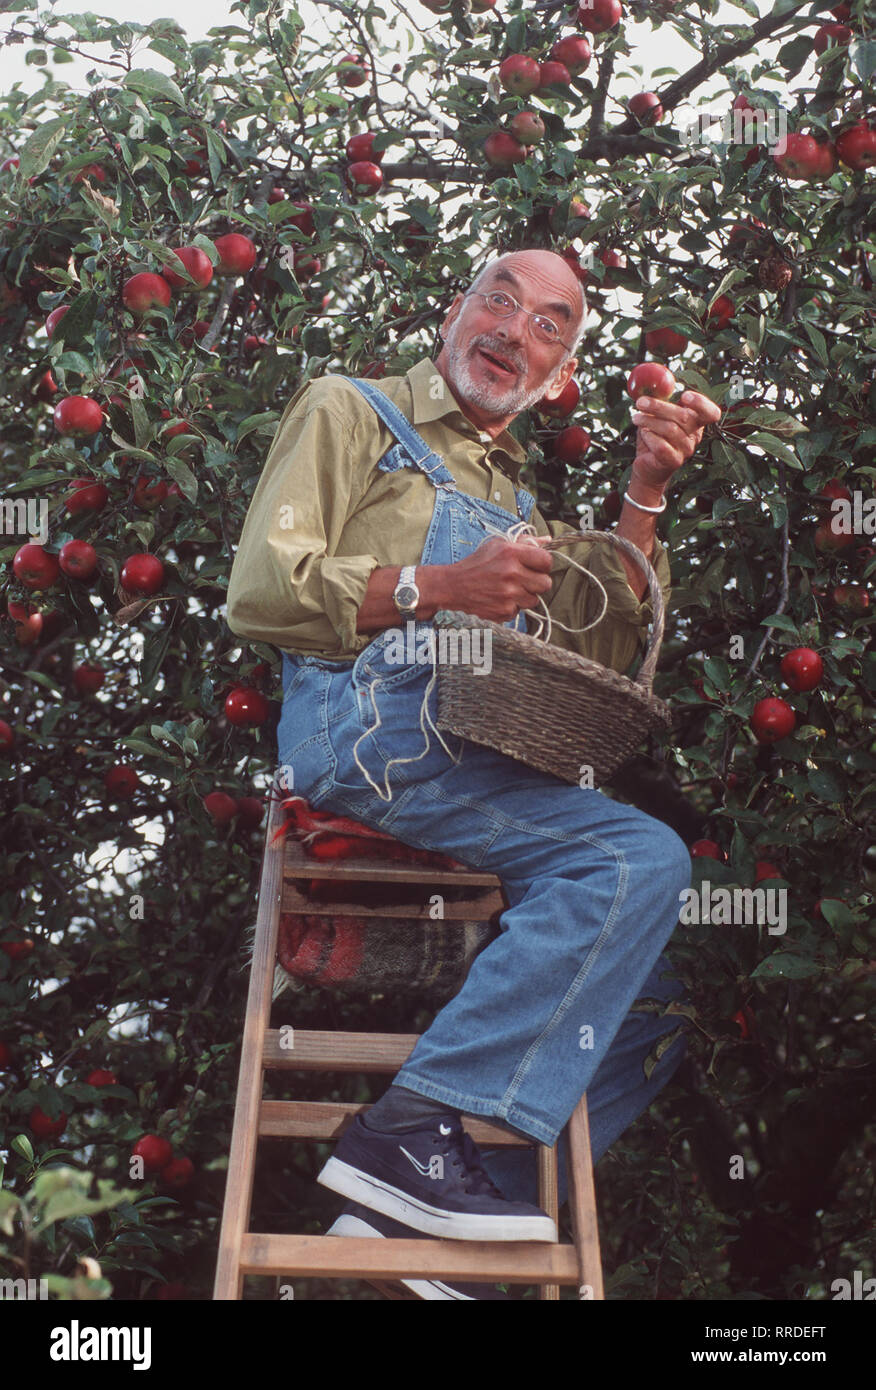 Löwenzahn - Peter (PETER LUSTIG) steht auf der Leiter und erntet Äpfel, als plötzlich ein unbekanntes Flugobjekt im Apfelbaum hängenbleibt. Regie: Hannes Spring, Wolfgang Teichert aka. Drachen fliegen / Überschrift: LÖWENZAHN / BRD 1998 Stock Photo